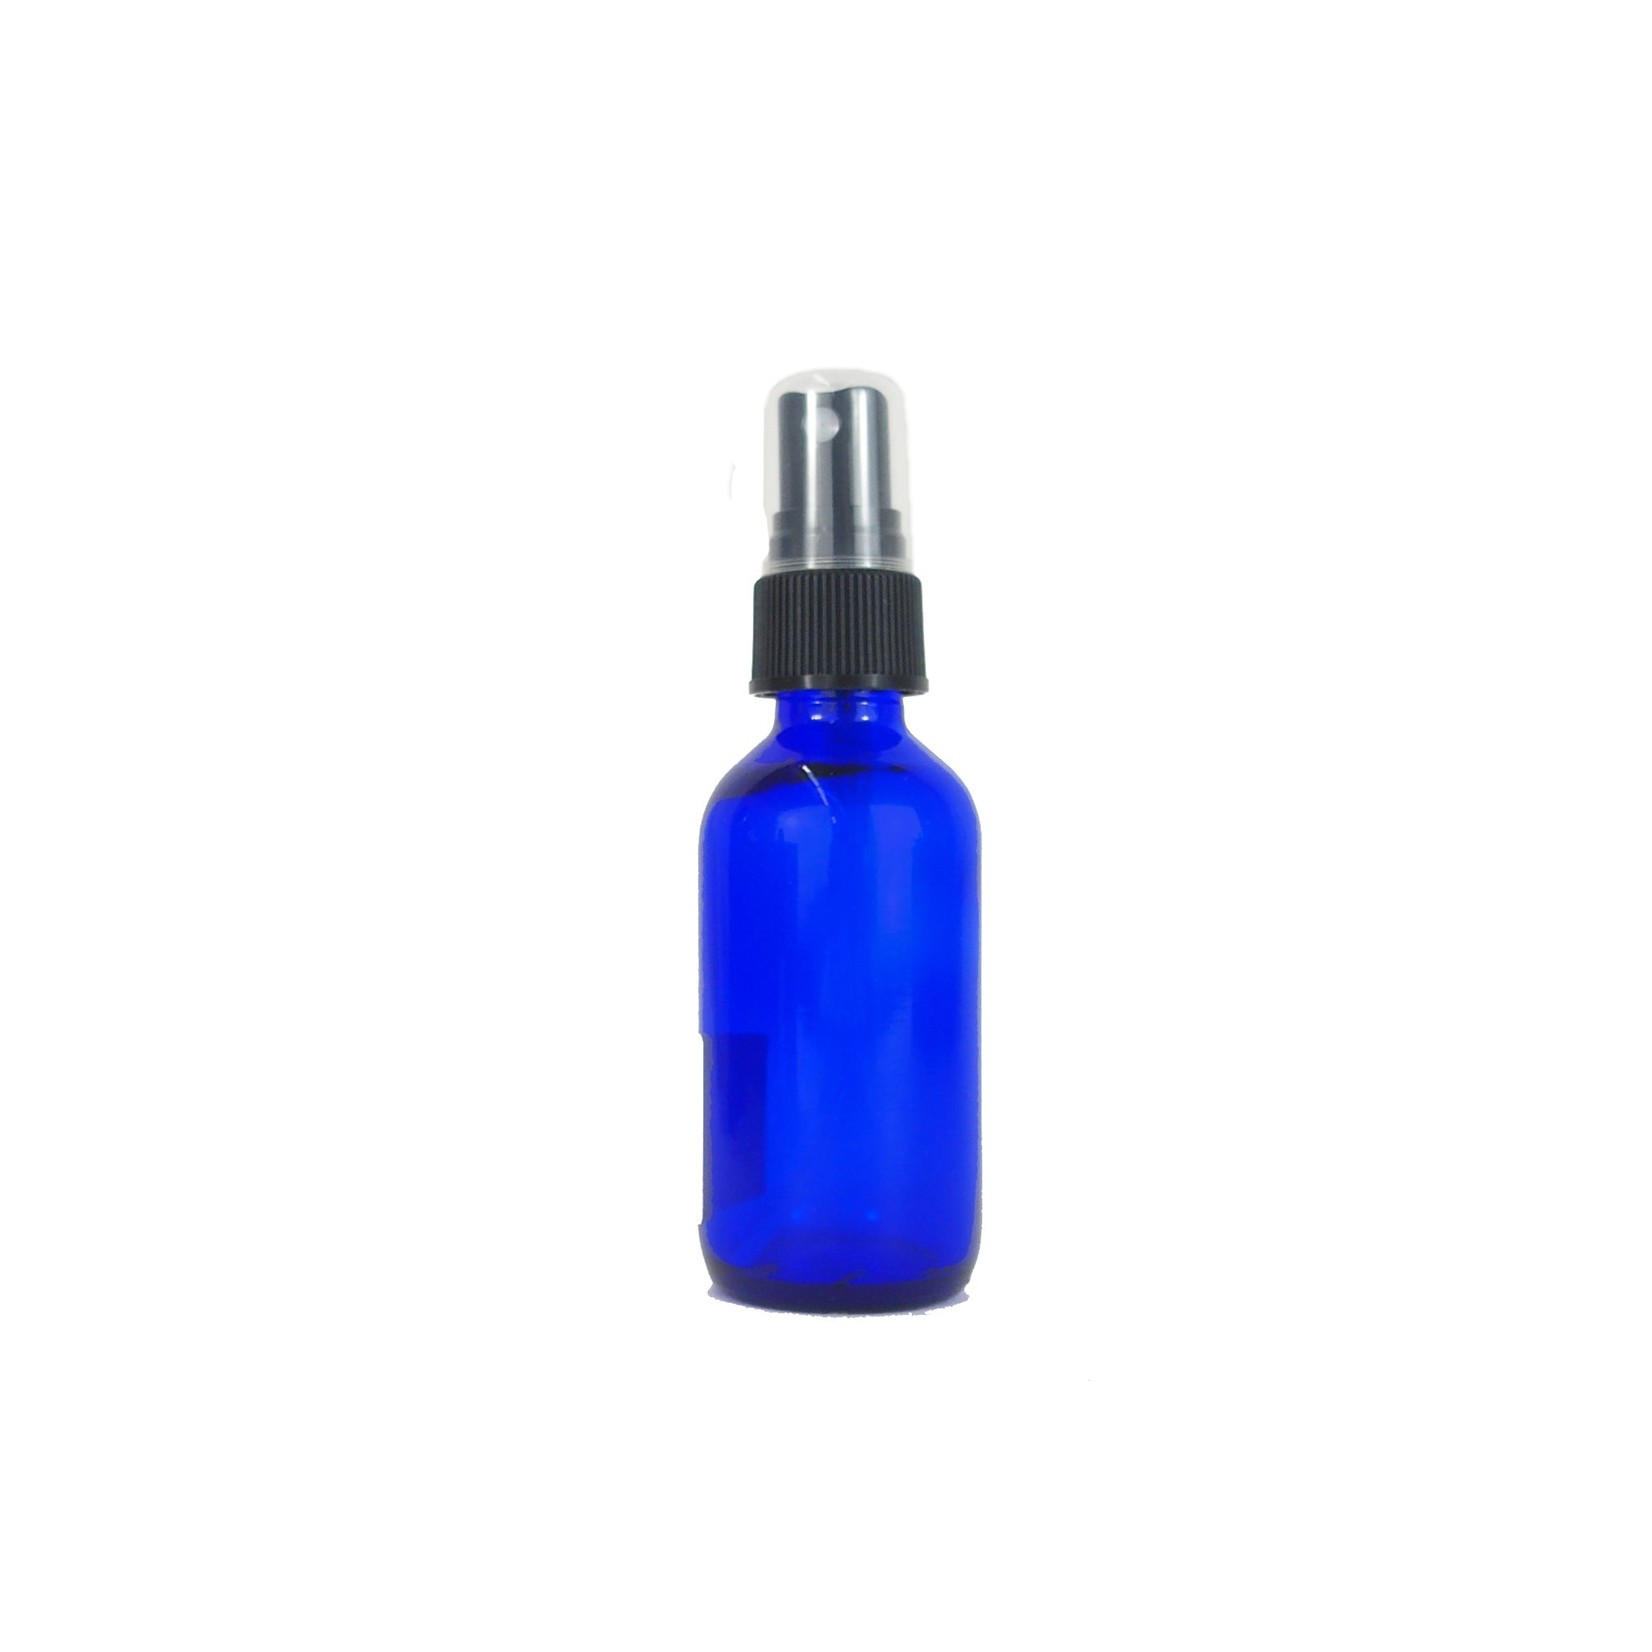 Wyndmere Wyndmere - 2 oz Cobalt Blue Glass Bottle With Mist Sprayer - 2 oz